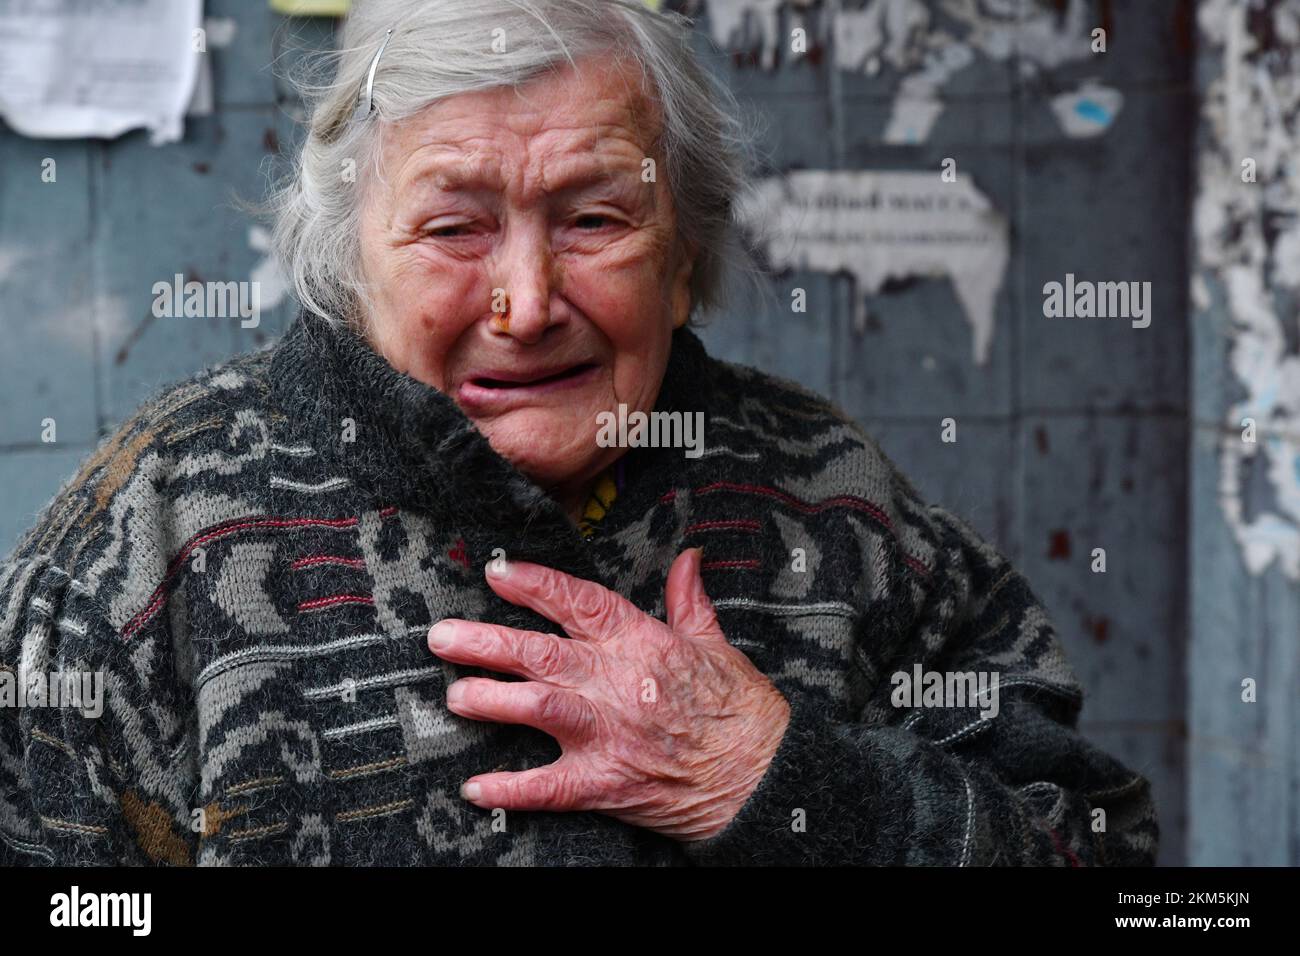 Kramatorsk, Ukraine. 25.. November 2022. Eine ältere Frau weint, als ihr Wohnhaus nach russischen Bombenangriffen in Kramatorsk beschädigt wurde. Die ukrainische Energieinfrastruktur wurde diese Woche erneut von Russland angegriffen, wodurch Millionen von Menschen ohne Strom blieben. Während die Temperaturen im ganzen Land unter den Gefrierpunkt fallen, gibt es Befürchtungen, dass Moskau - um den Krieg, den es begonnen hat, zu gewinnen - den Winter "als Waffe" einstuft. Und nirgendwo ist es klarer, wie das aussehen könnte, als in den Städten an der Front im Osten. (Foto: Andriy Andriyenko/SOPA Images/Sipa USA) Guthaben: SIPA USA/Alamy Live News Stockfoto